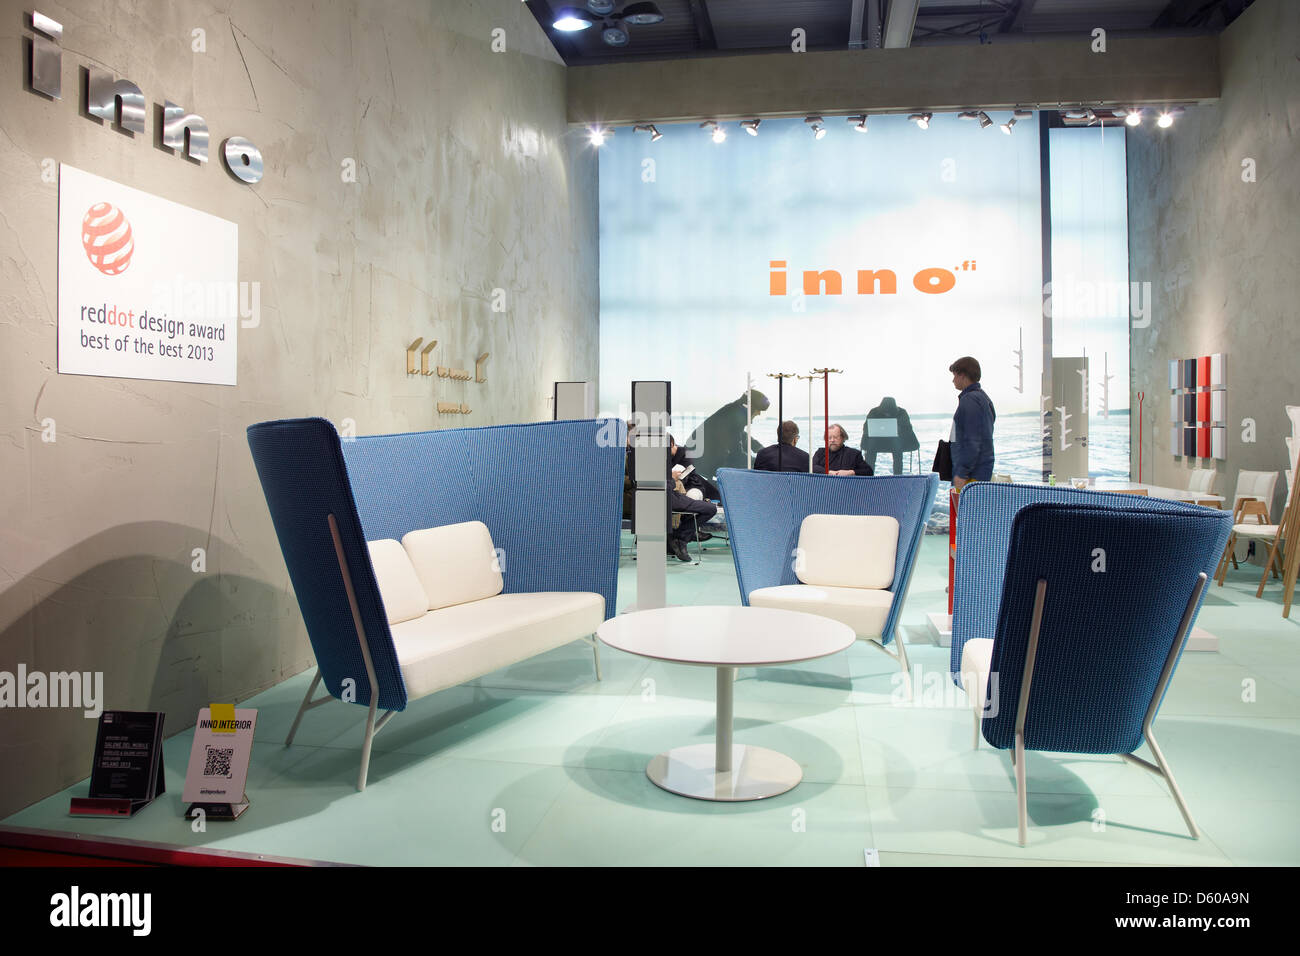 Mailand, Italien, 9. April 2013. Inno-Stand auf der Mailänder Möbelmesse Salone Internazionale del Mobile. Stockfoto